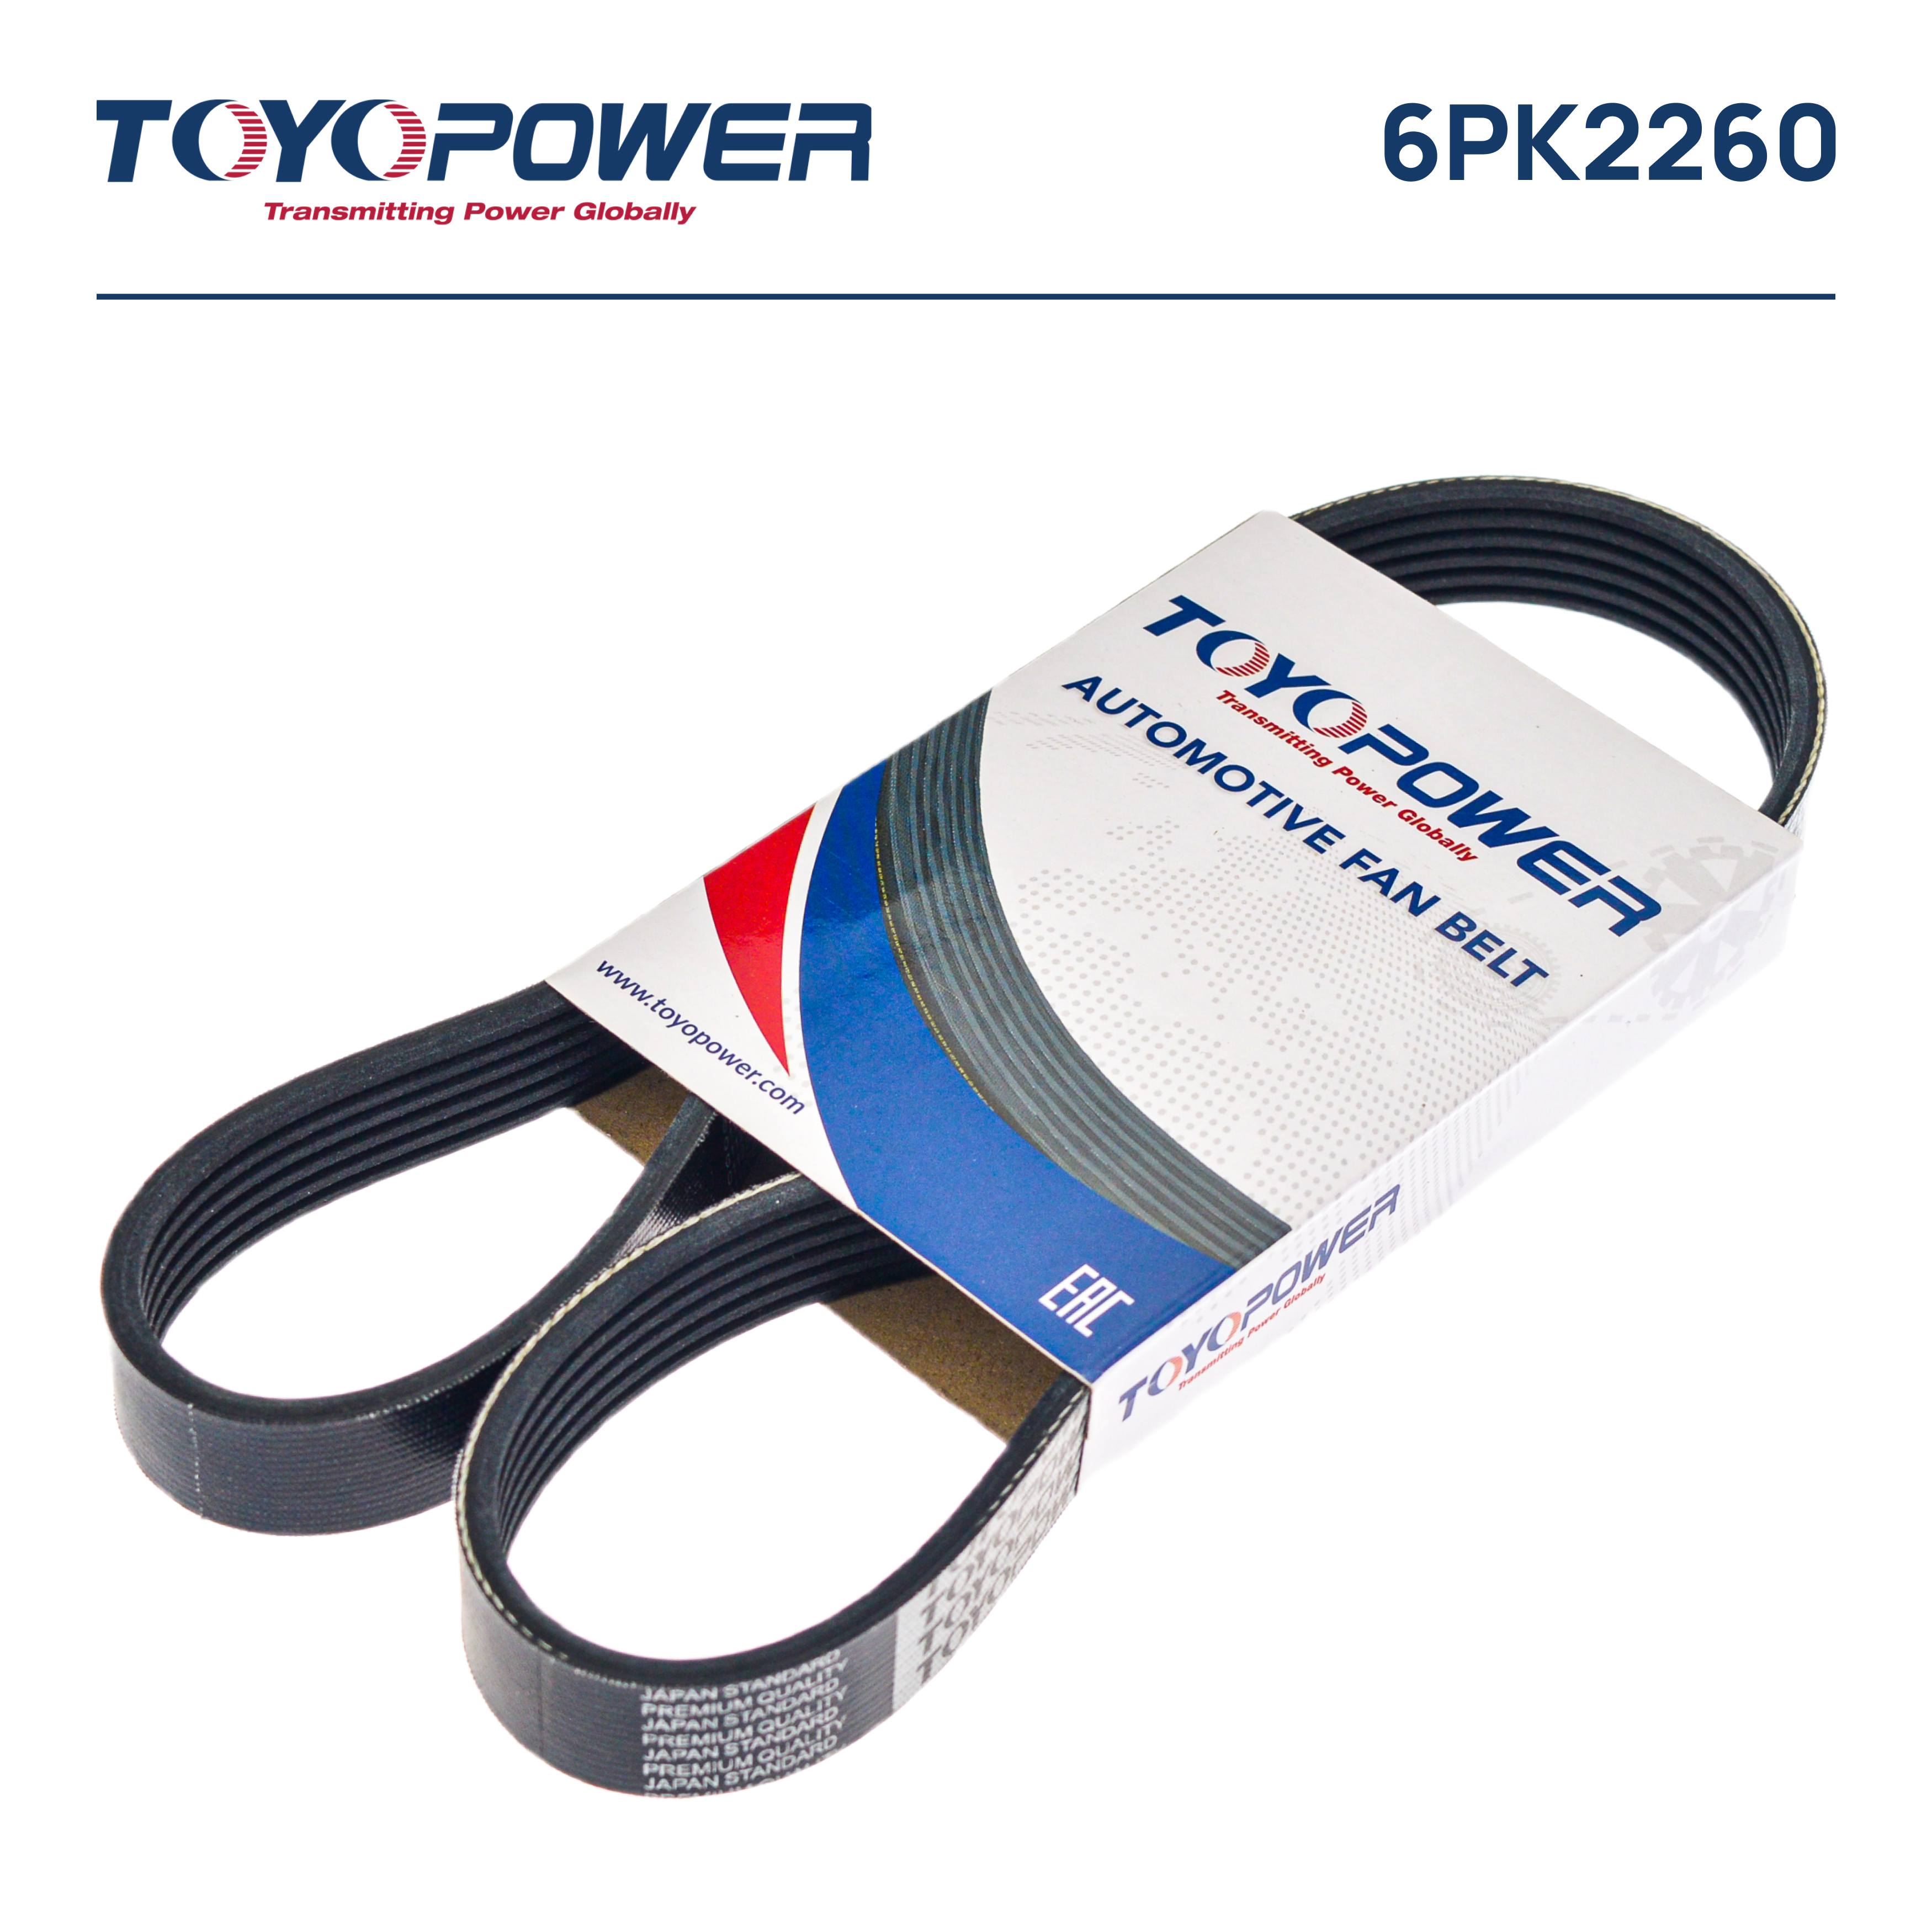 Ремень поликлиновый - Toyopower 6PK2260